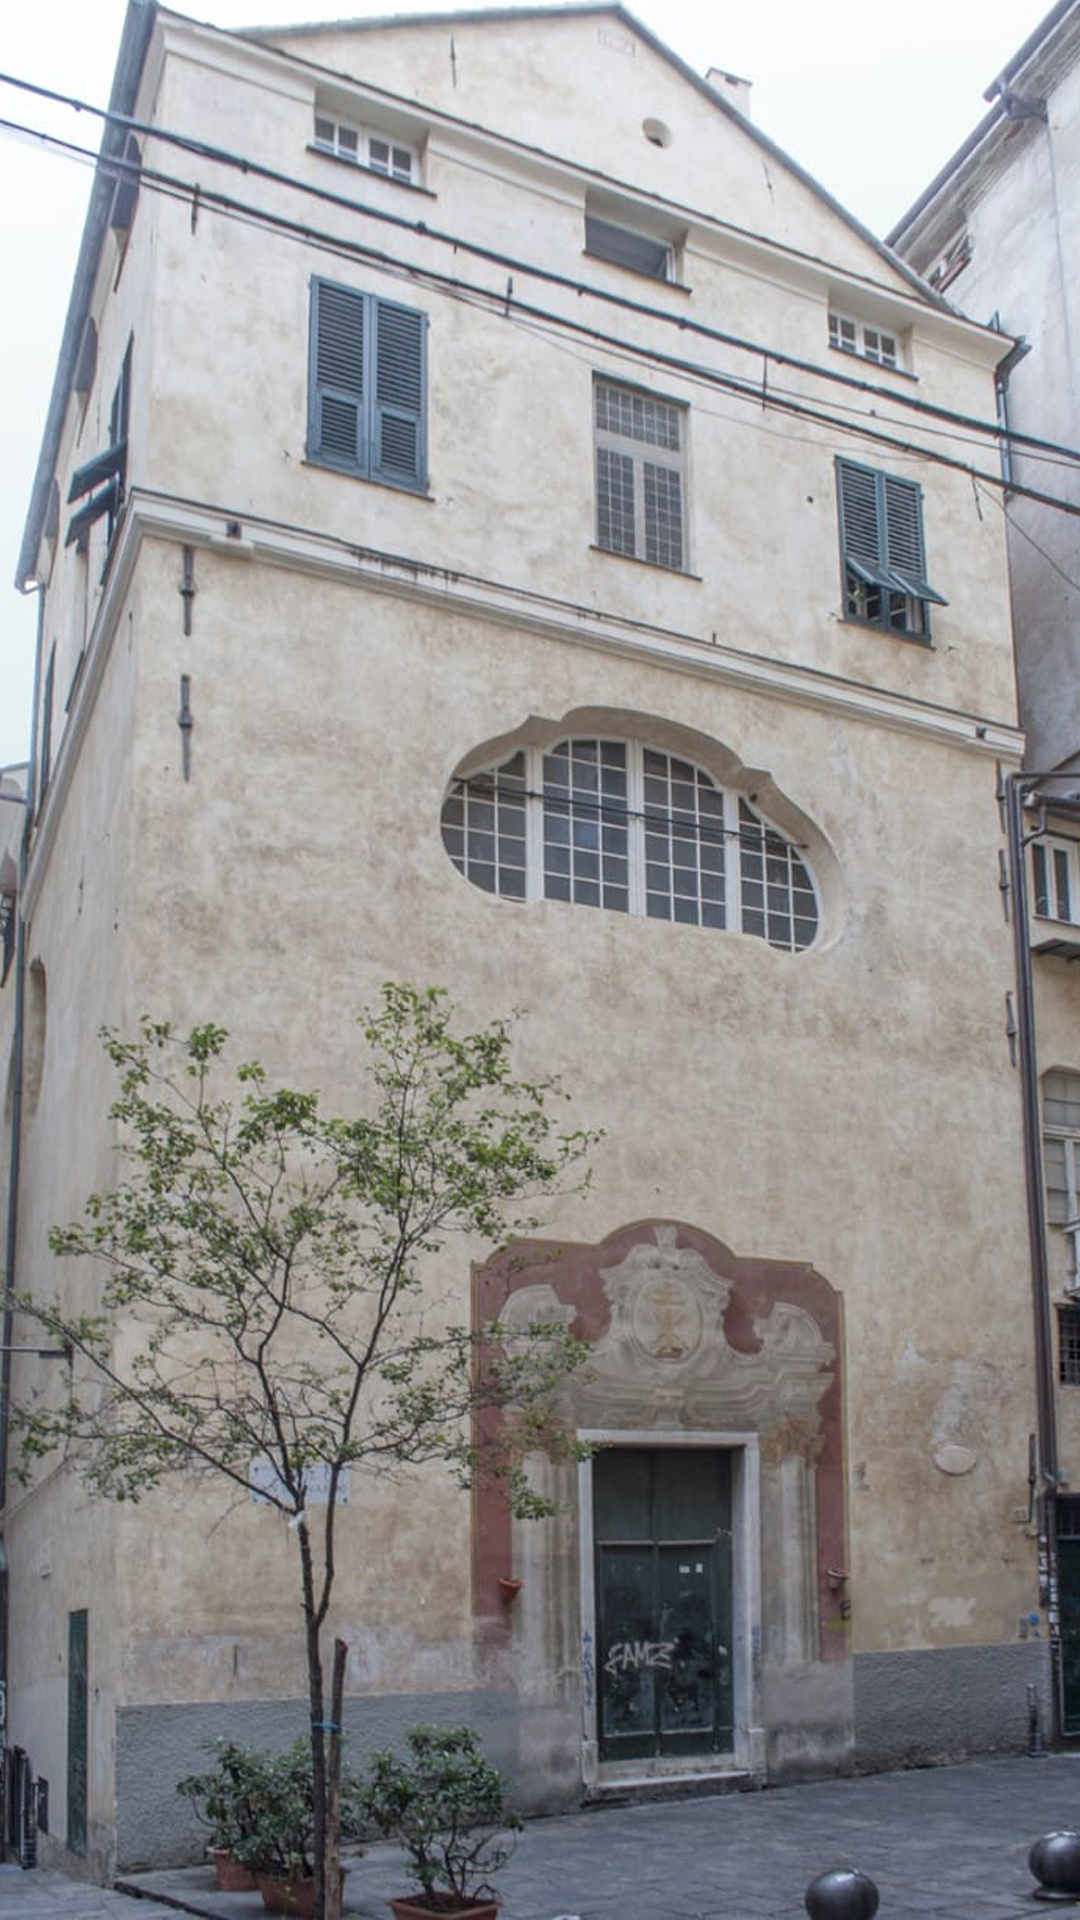 L'oratorio dei Santi Pietro e Paolo @ Via di San Bernardo